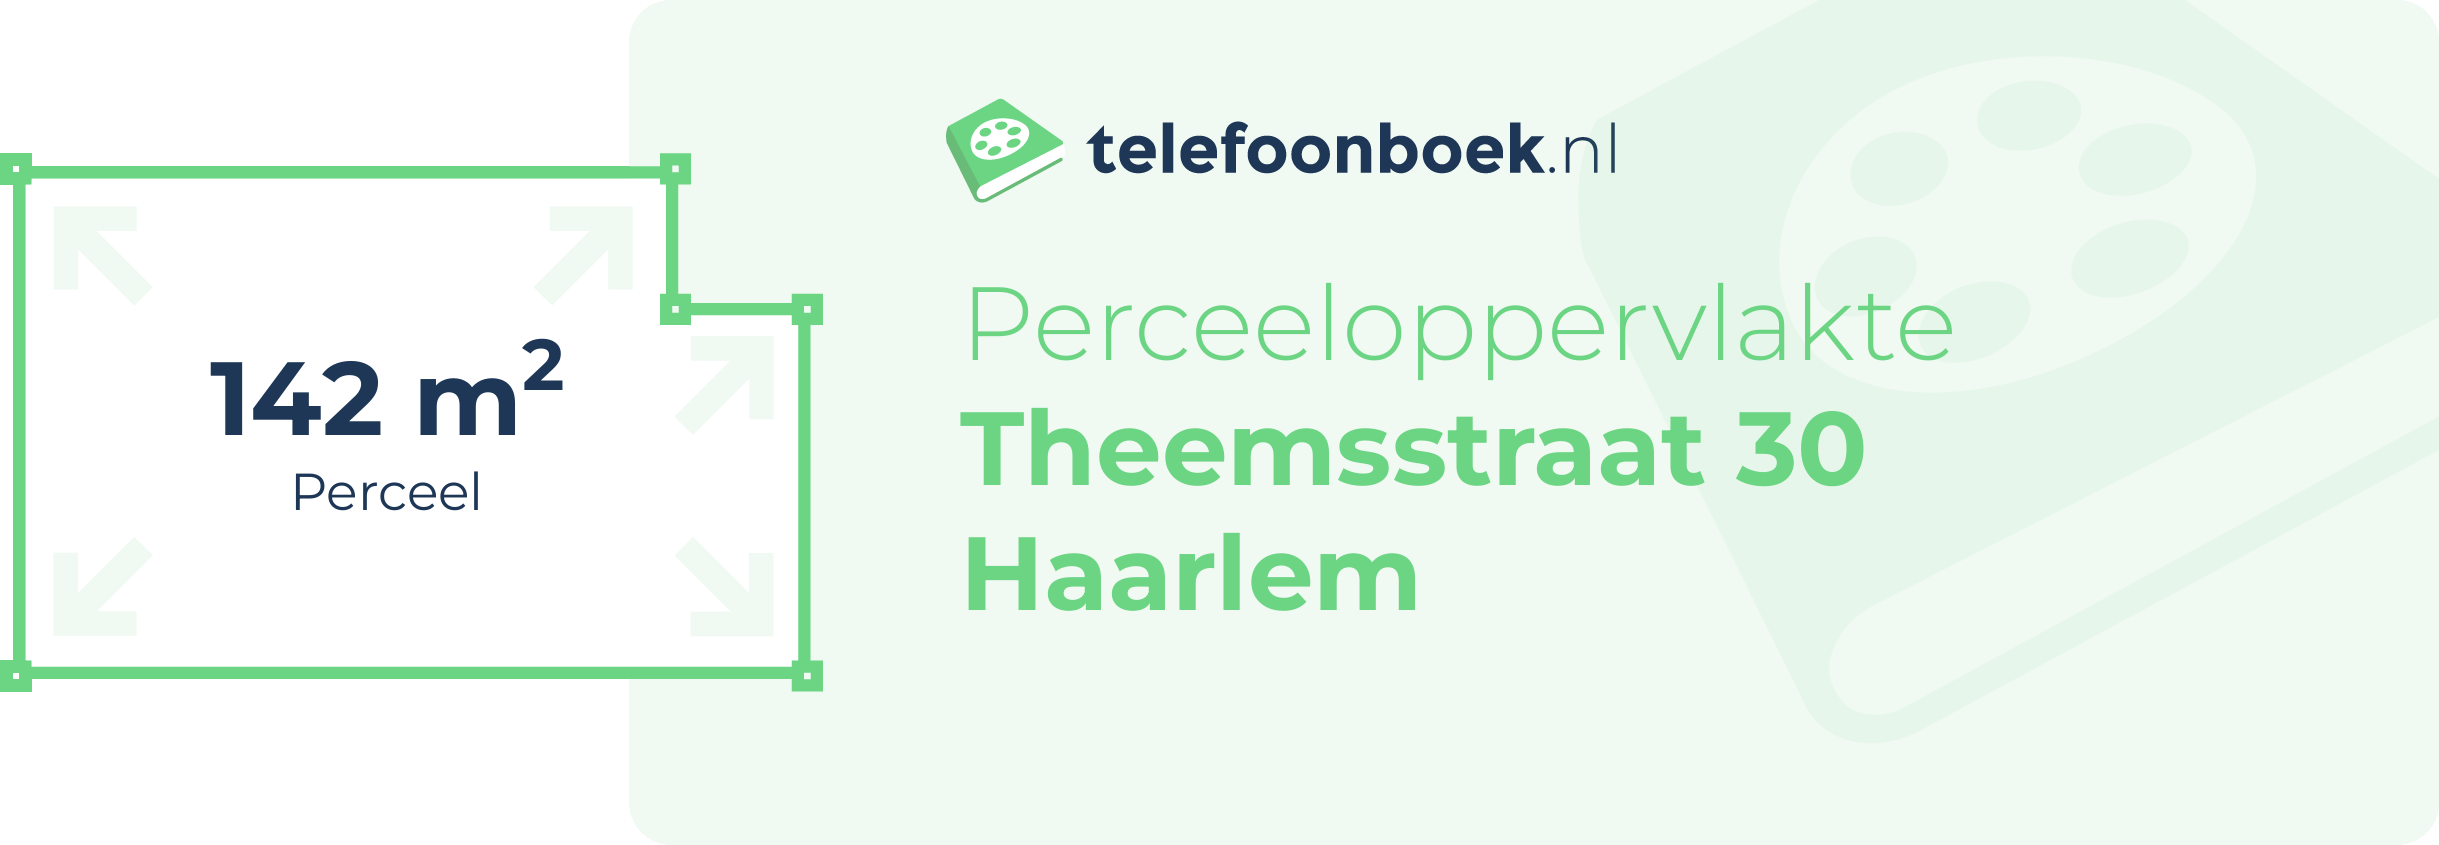 Perceeloppervlakte Theemsstraat 30 Haarlem